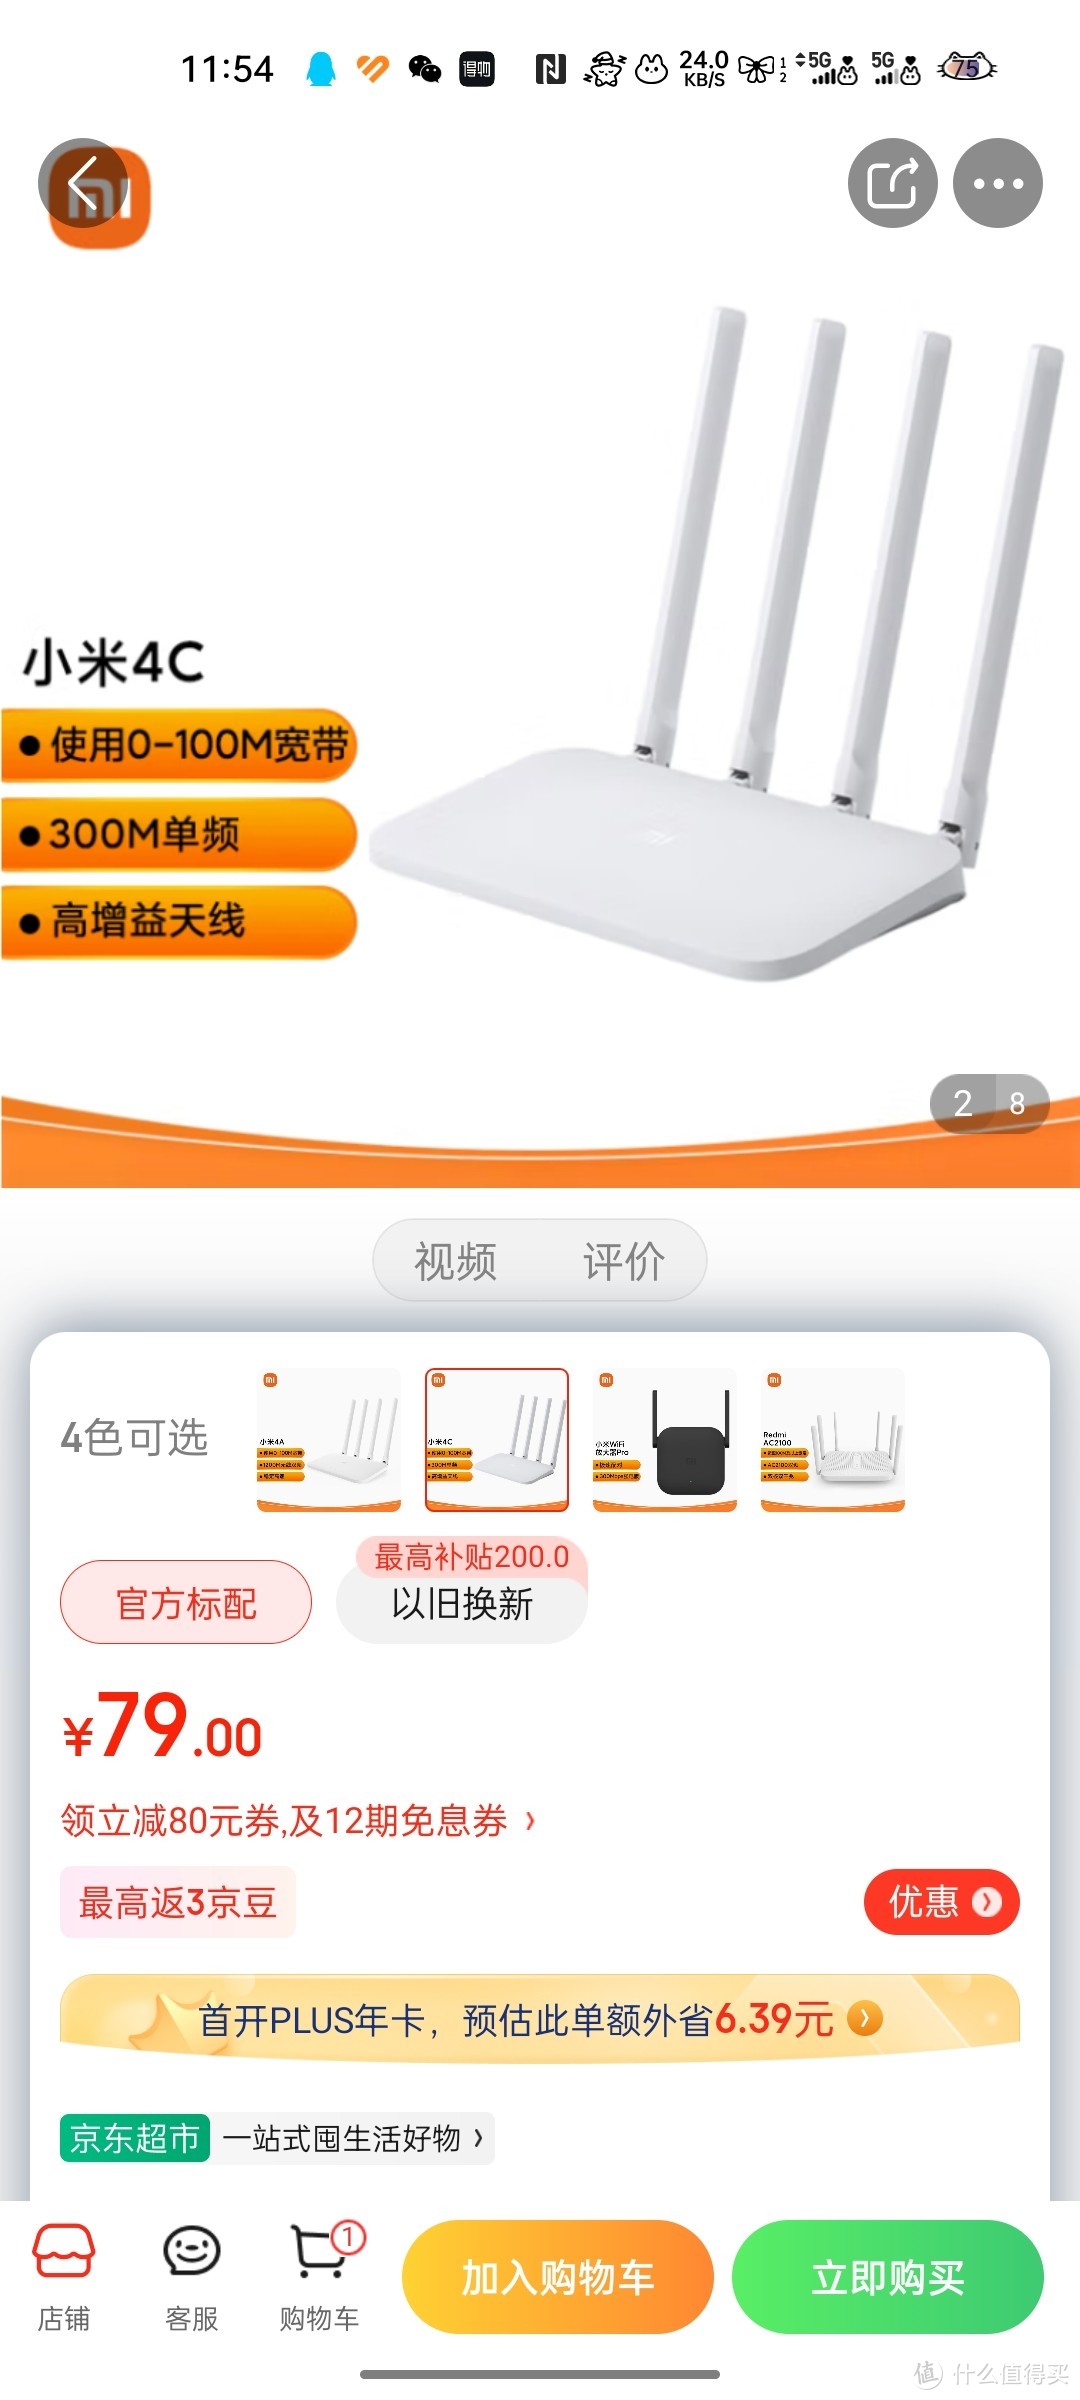 小米路由器4C(白色) 300M无线速率 智能家用路由器 安全稳定 WiFi无线穿墙好物分享呀冲冲冲买买买买买买